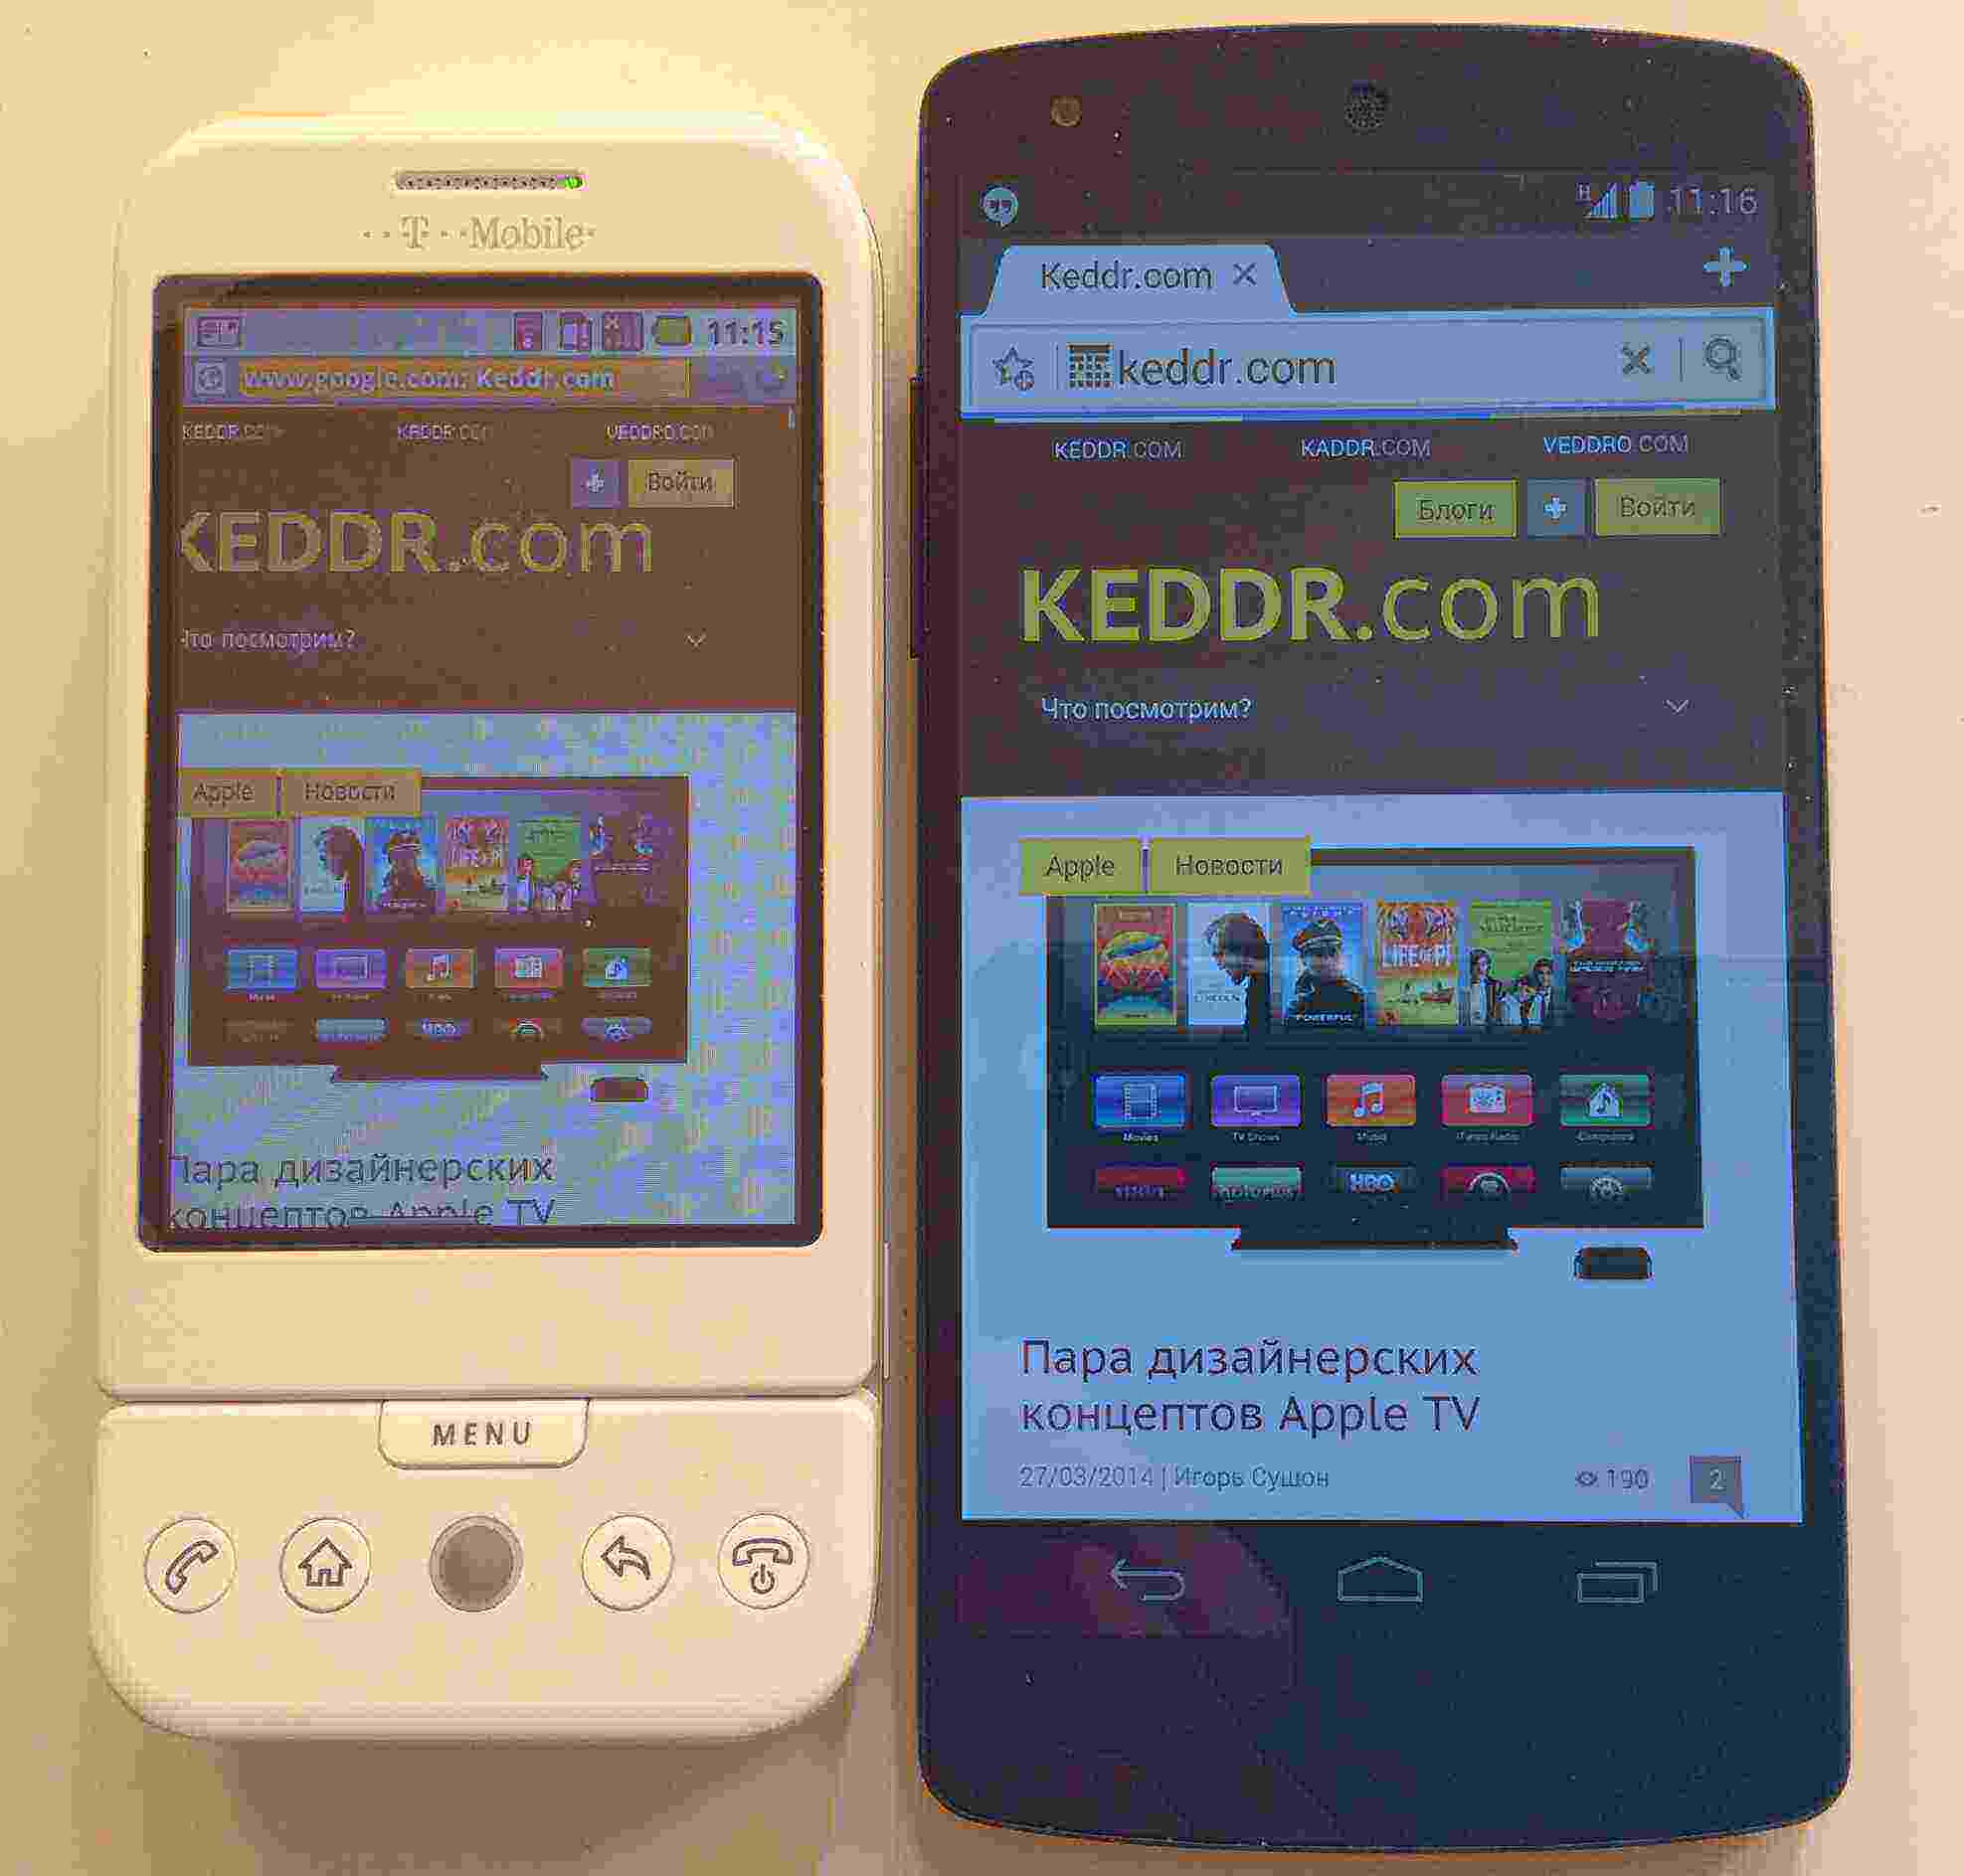 Даунгрейд… С последнего Nexus5 на первый андроид смартфон… T-mobile G1.